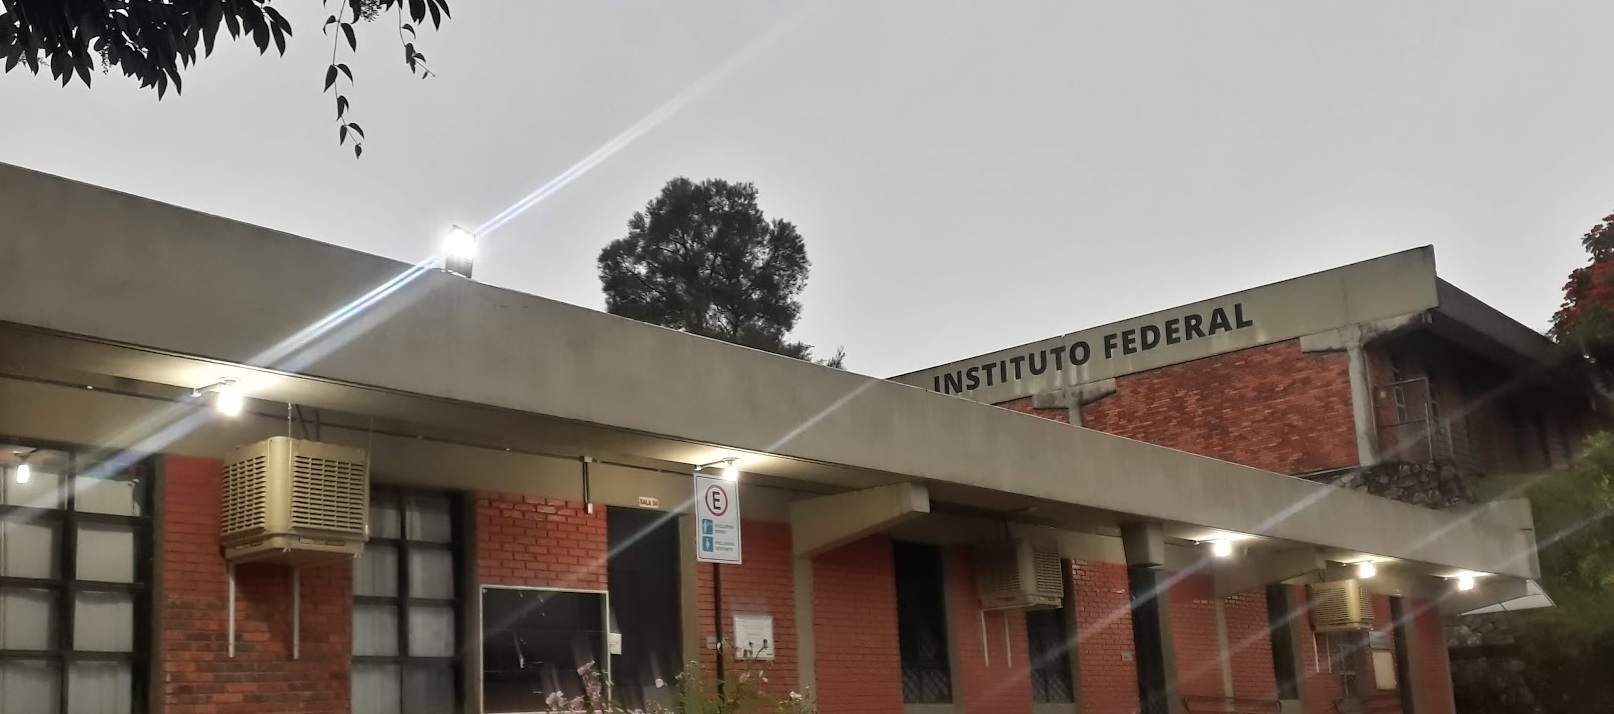 Oficina temática de Xadrez Intercampi acontece no dia 21/07 — Instituto  Federal de Educação, Ciência e Tecnologia de Minas Gerais Campus  Conselheiro Lafaiete